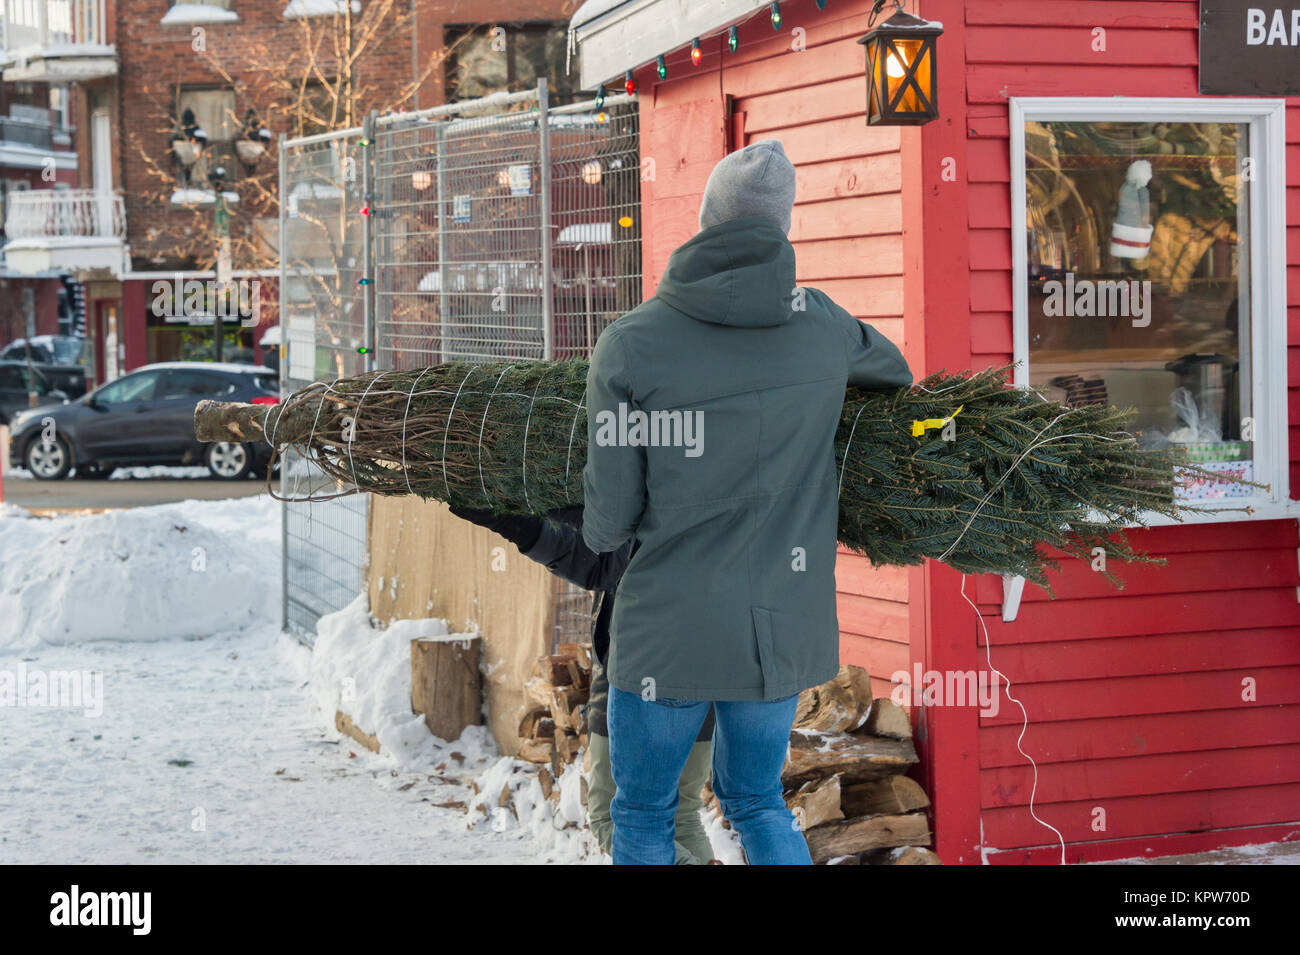 Montréal, Canada - 16 décembre 2017 : un homme porte un arbre de Noël Banque D'Images